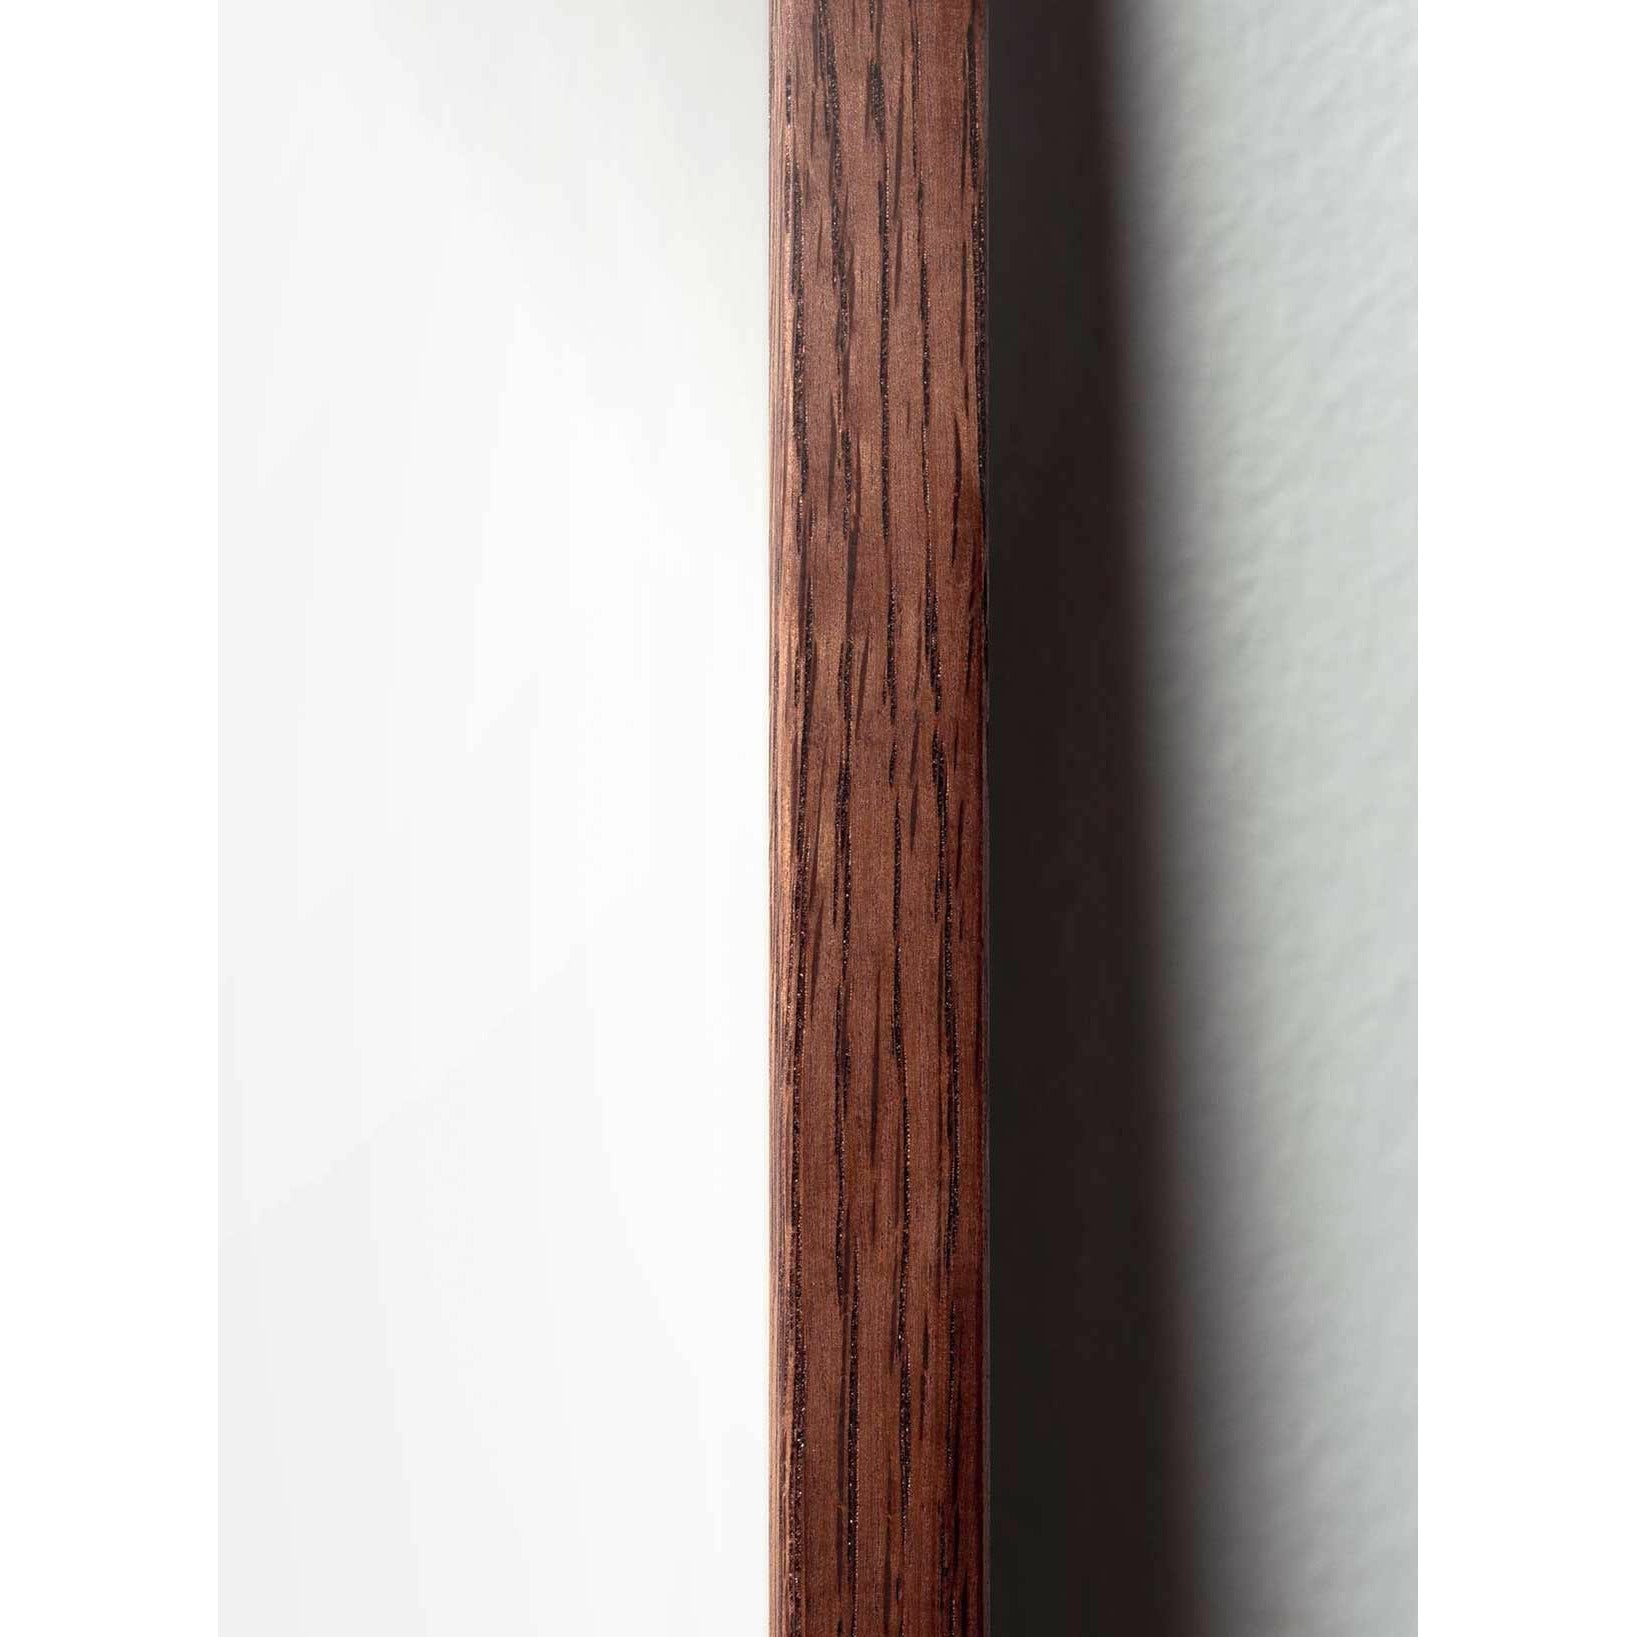 Póster clásico de Snowdrop de creación, marco hecho de madera oscura 30x40 cm, fondo negro